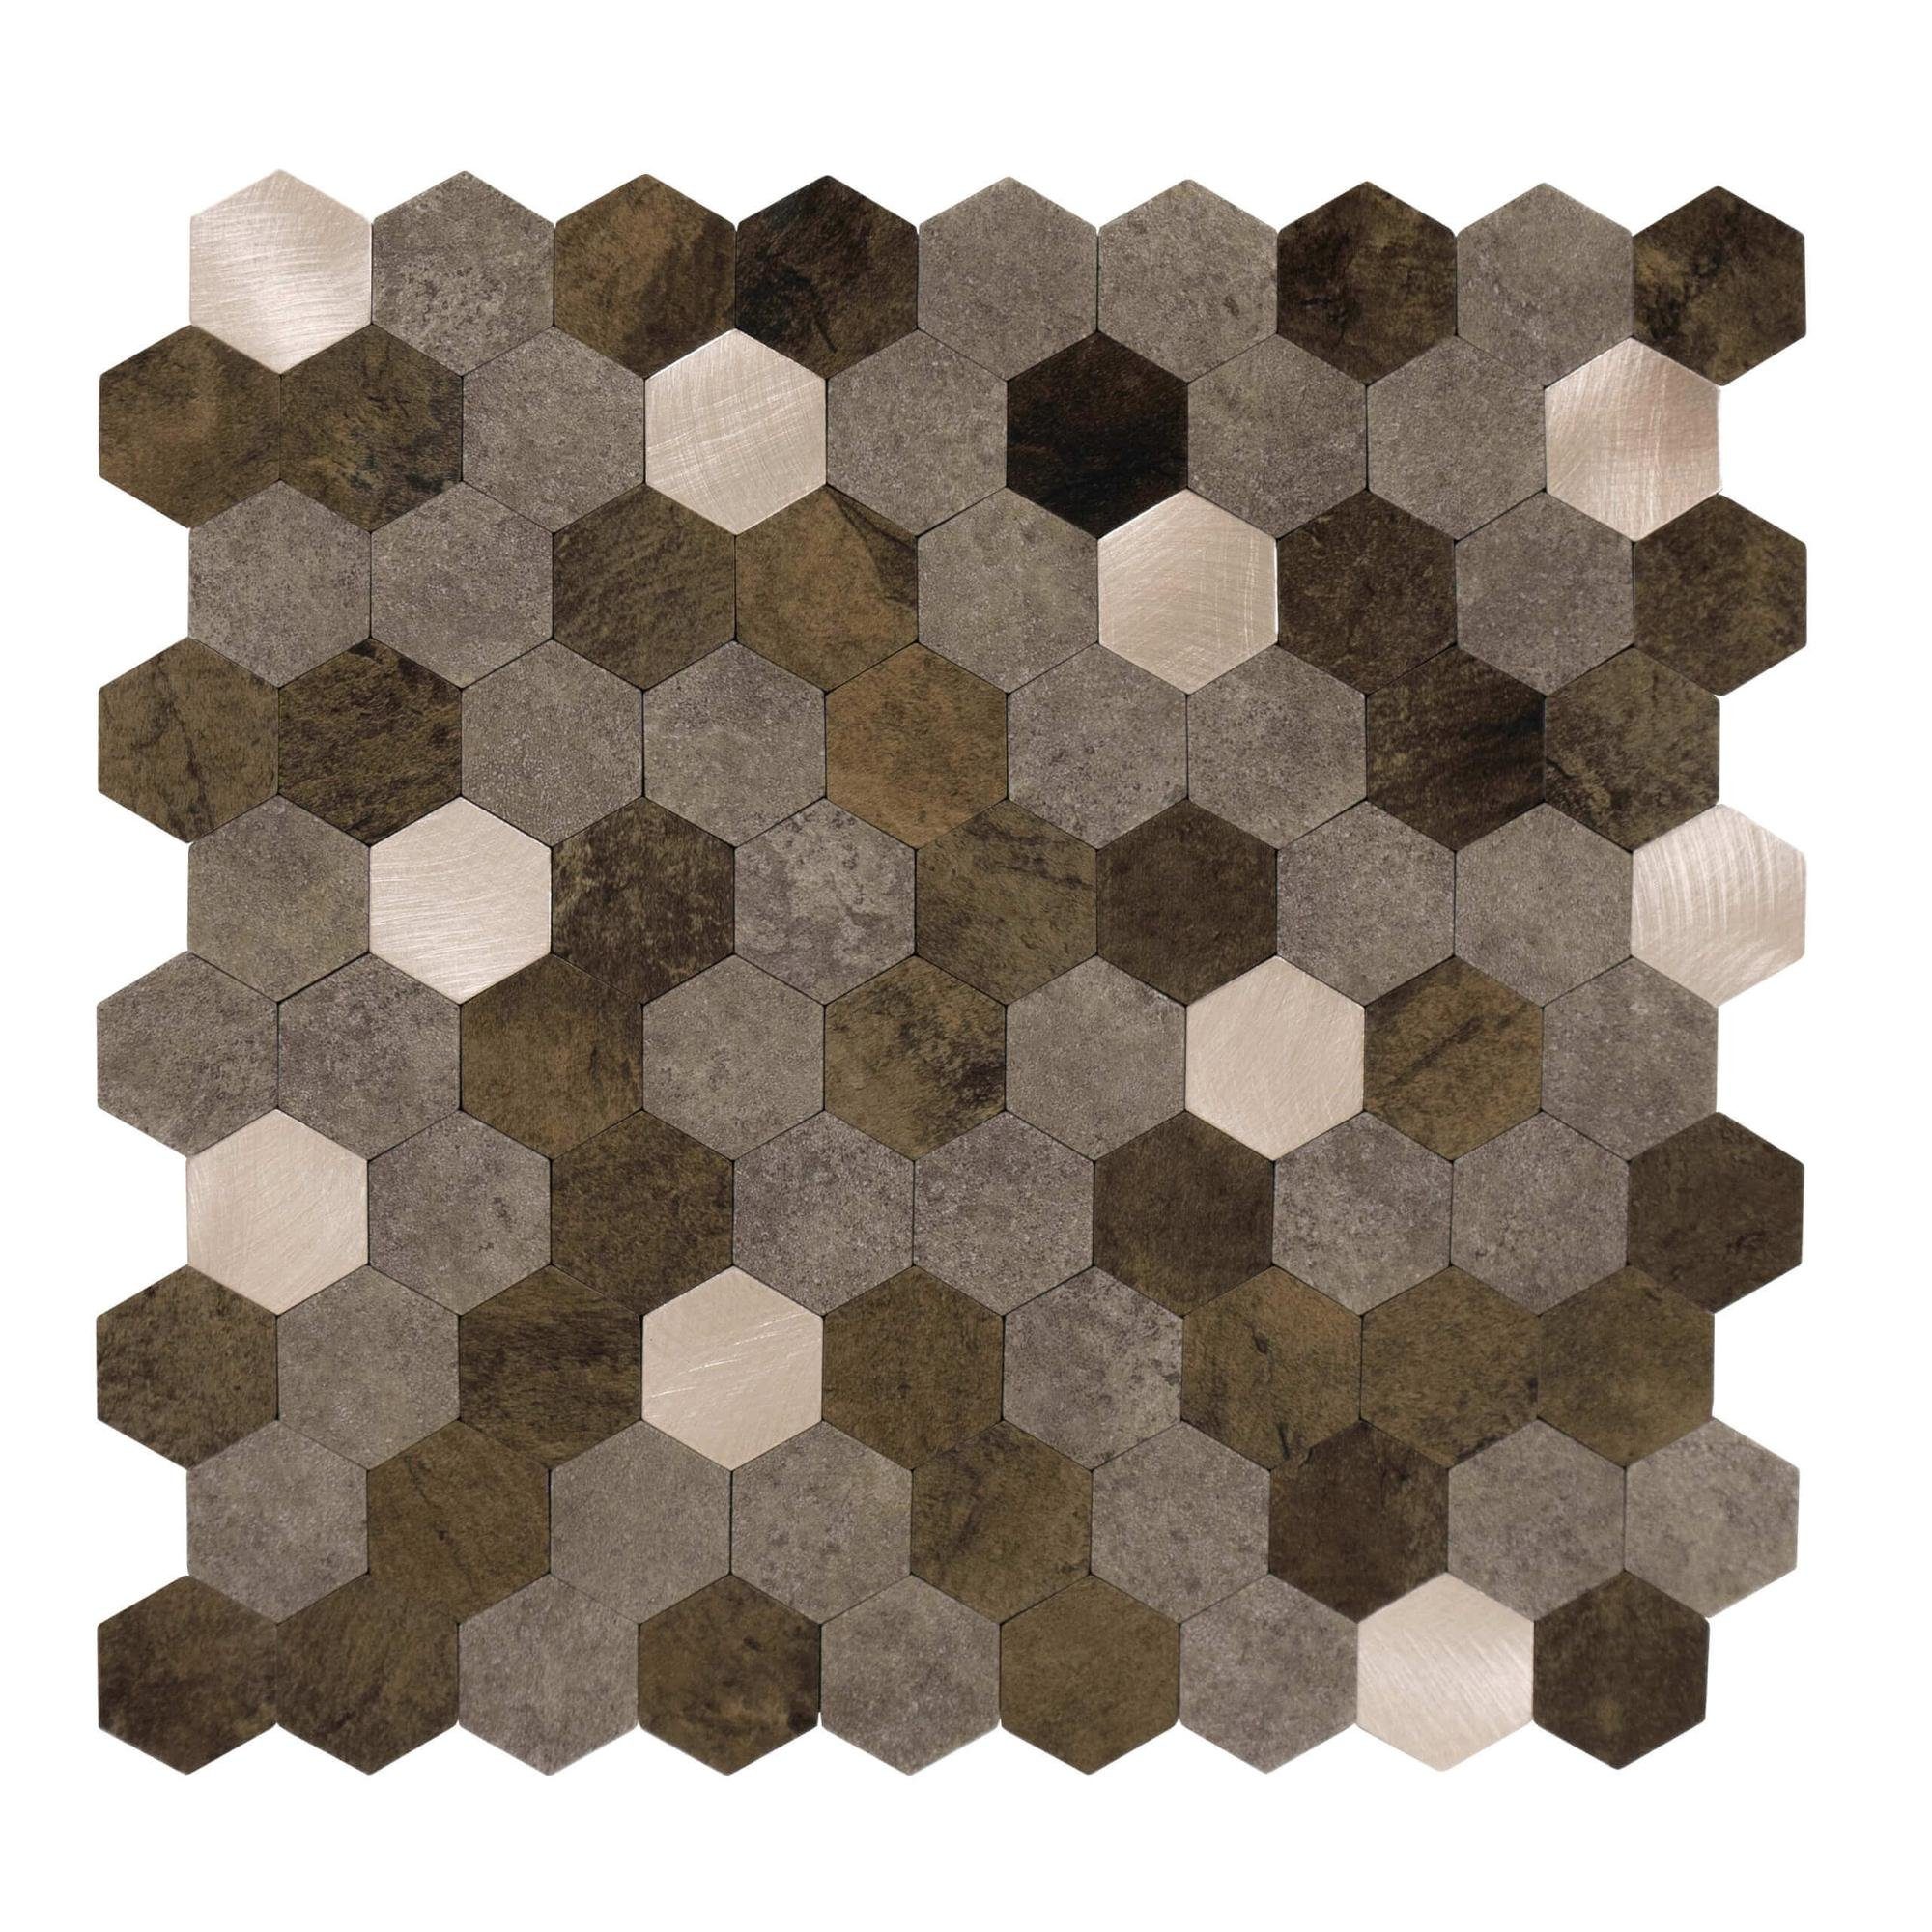 Dalsys Wandpaneel 0,88m² 11 Stück selbstklebend, (Braun-Mix Gold Hexagon, 11-tlg., Wandfliese) feuchtigskeitsbeständig, einfach montiert, hochwertiges Material